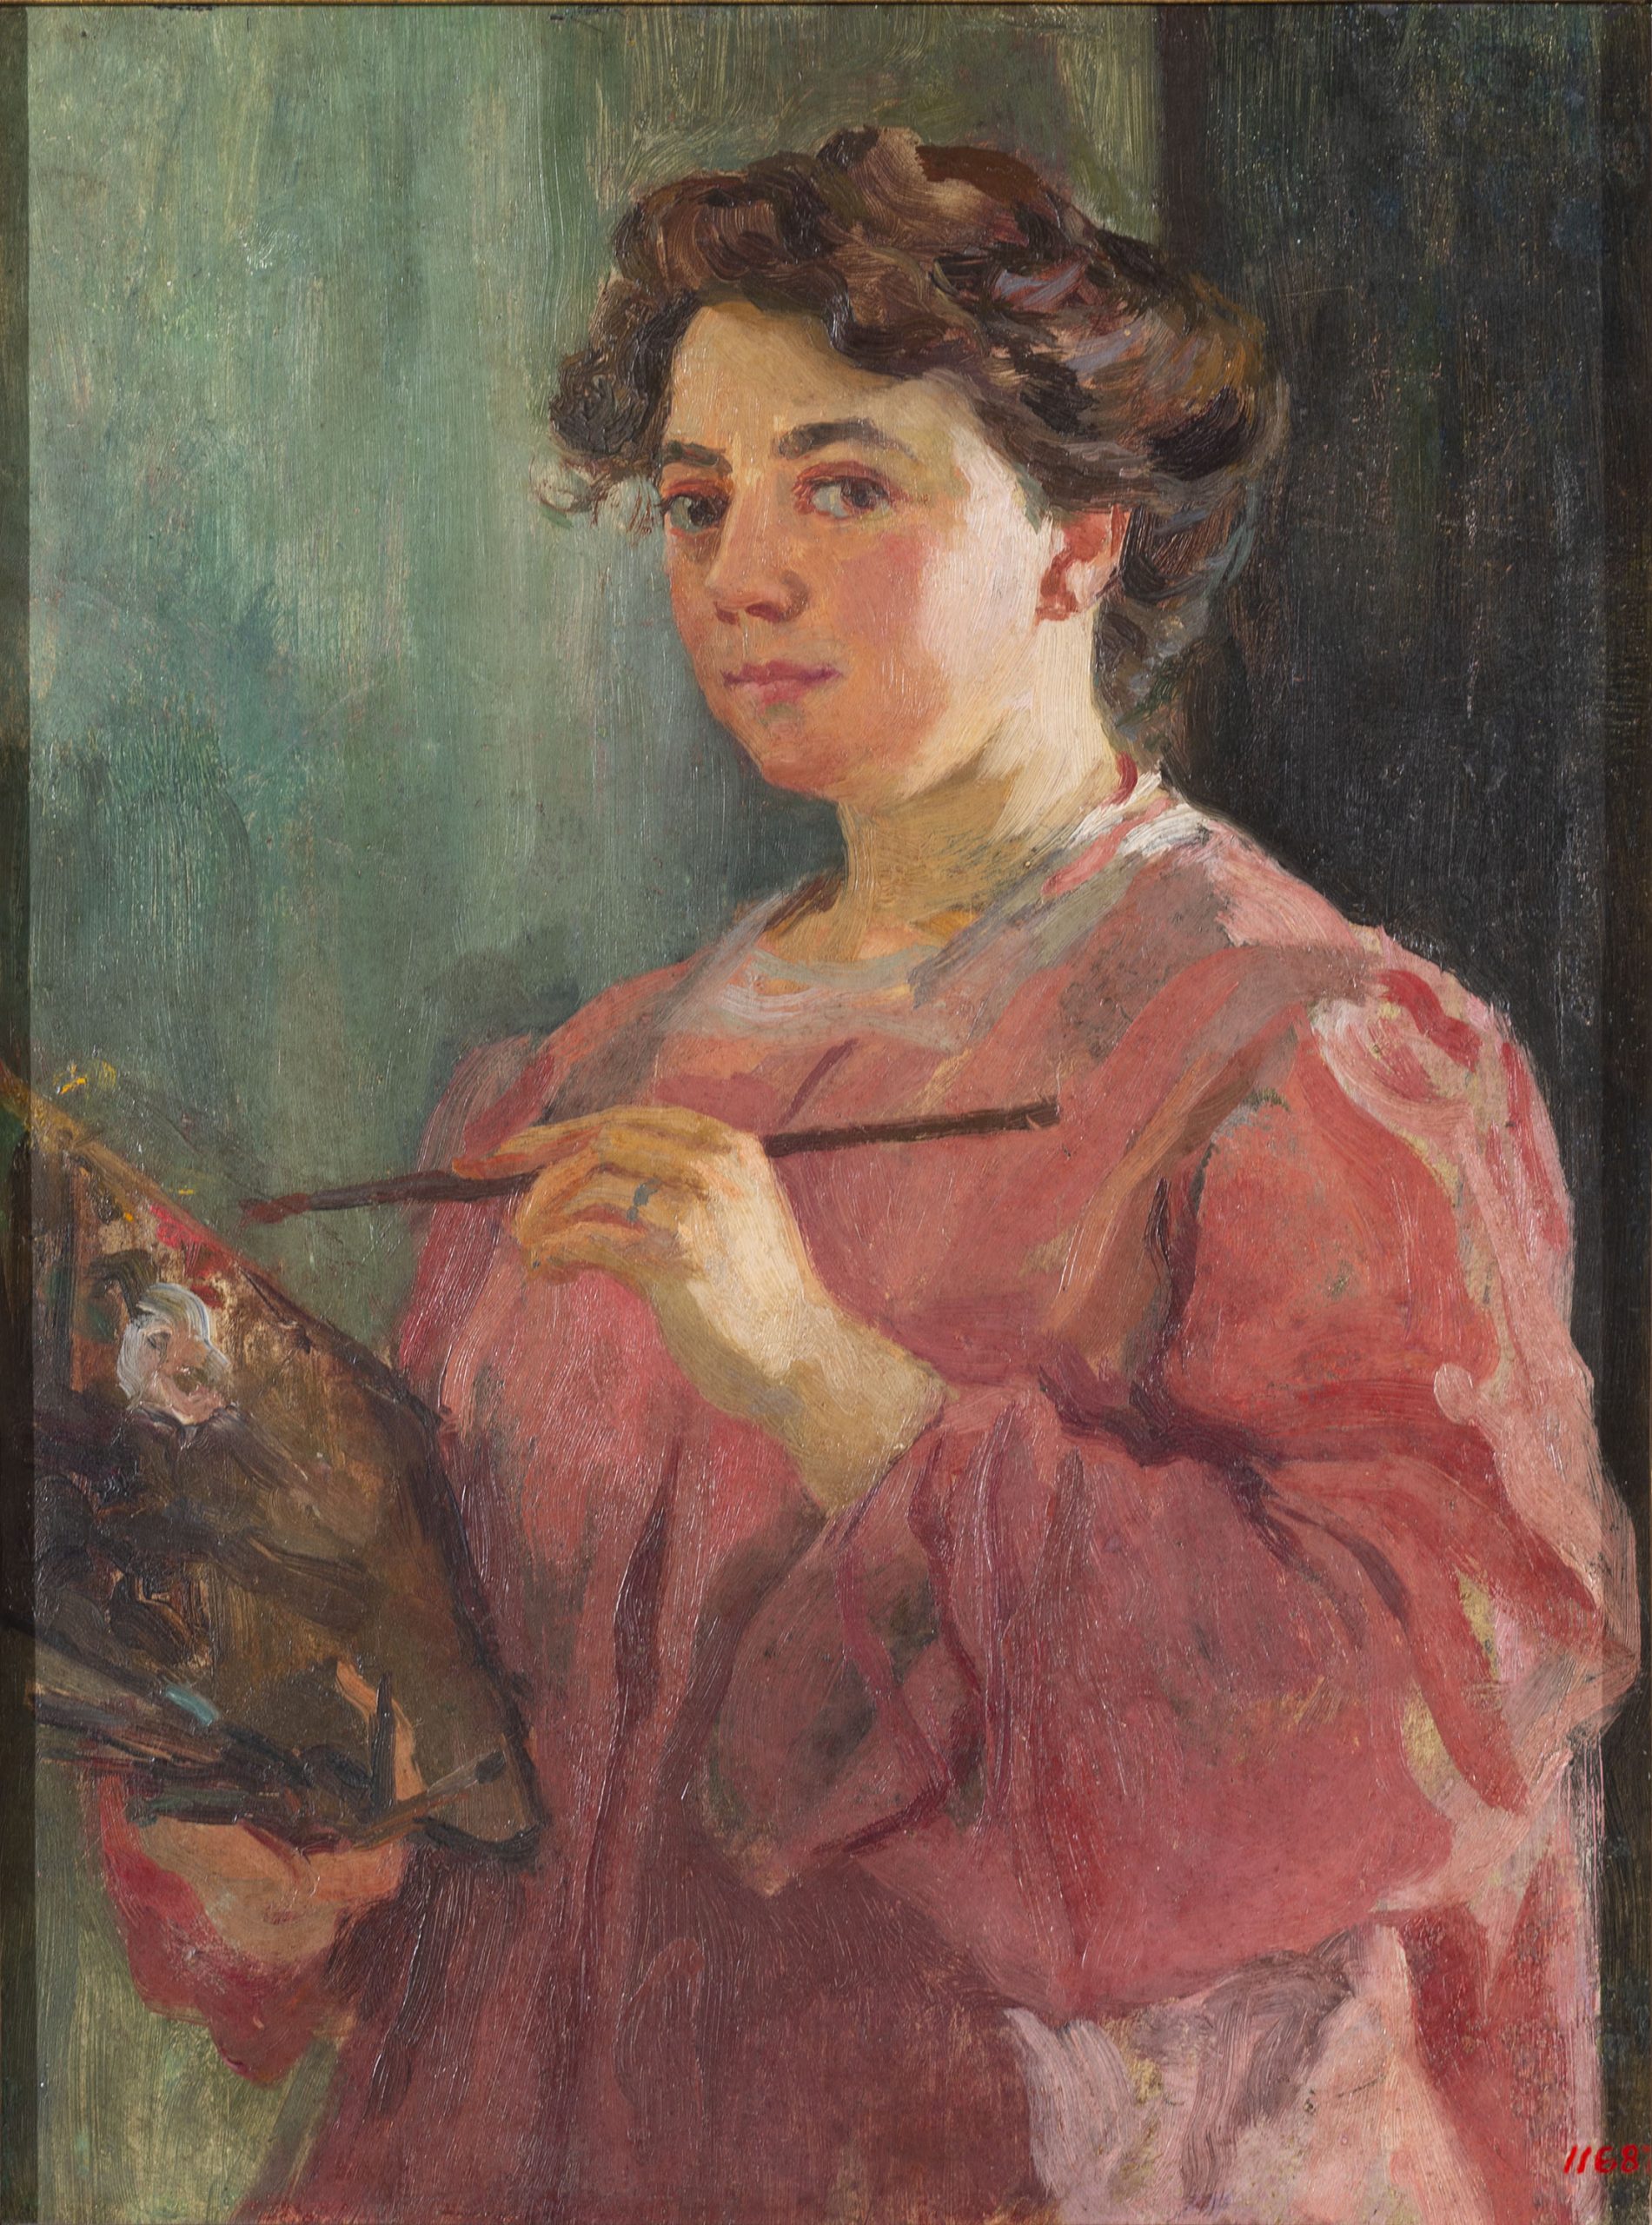 Lluïsa Vidal, Autorretrato, hacia 1899. Museo Nacional de Arte de Cataluña, donación de Francesca Vidal y otros hermanos del artista, 1935